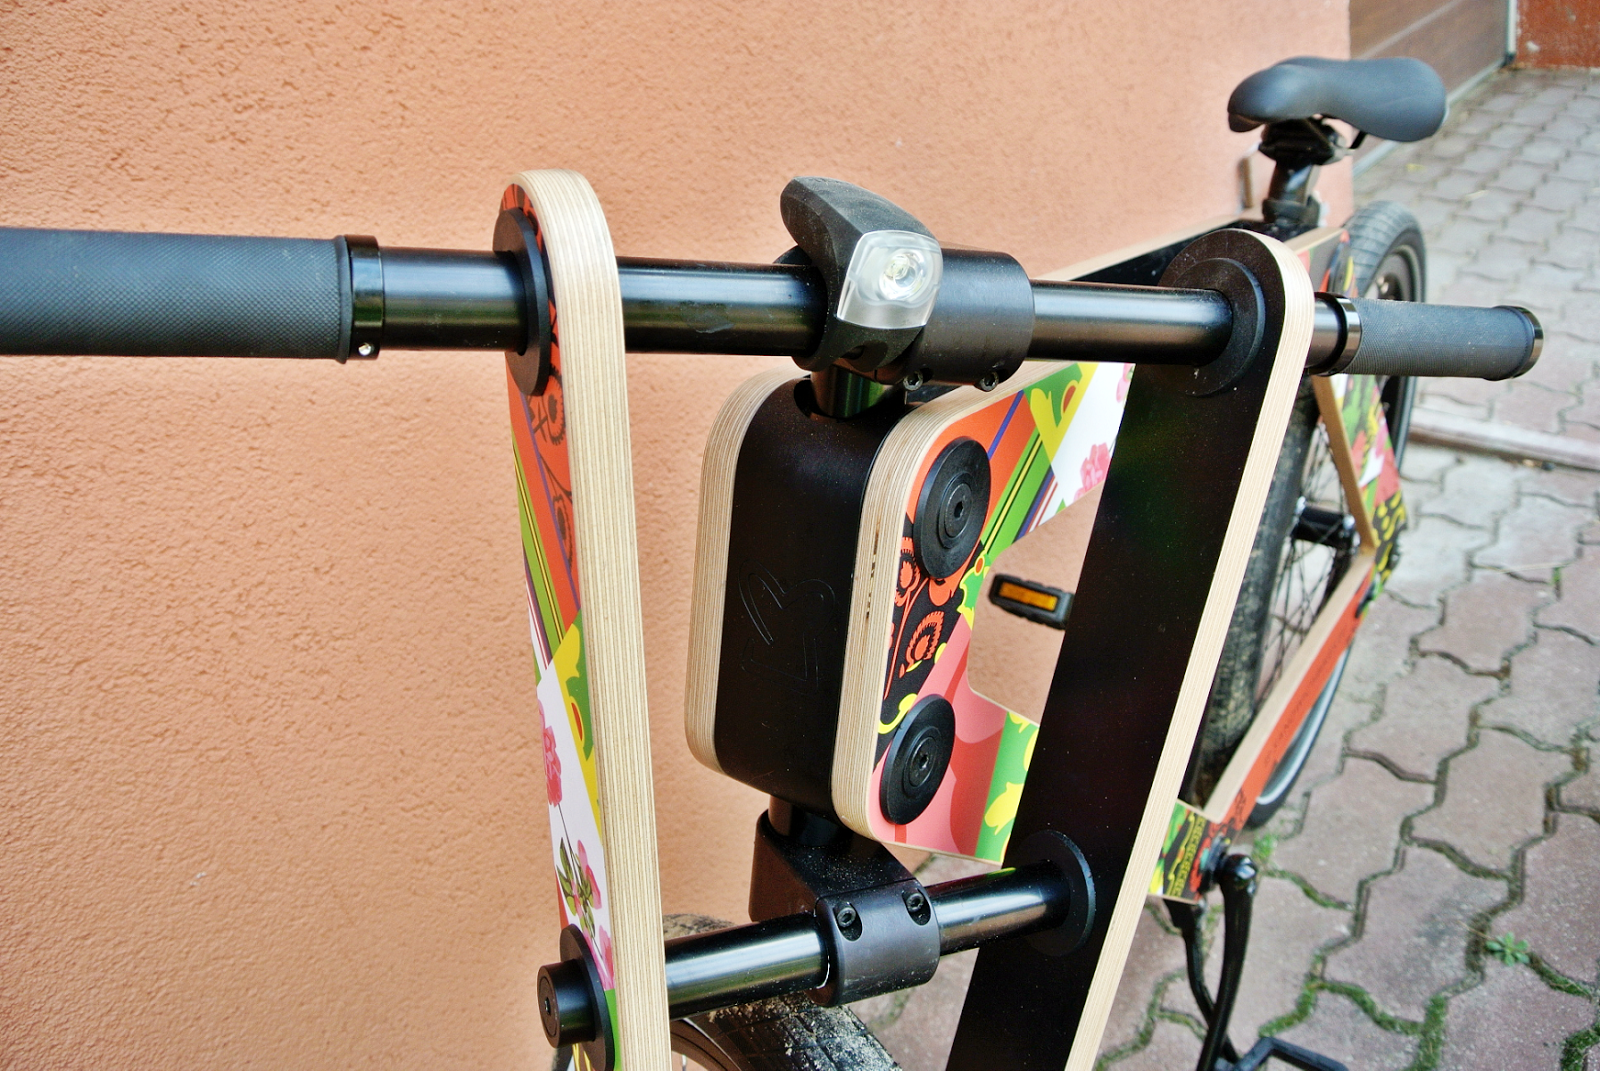 sandwichbike,jak sie jezdzi na drewnianym rowerze,luksusowy rower sandwichbike,drewniany rower,sandwichbikes